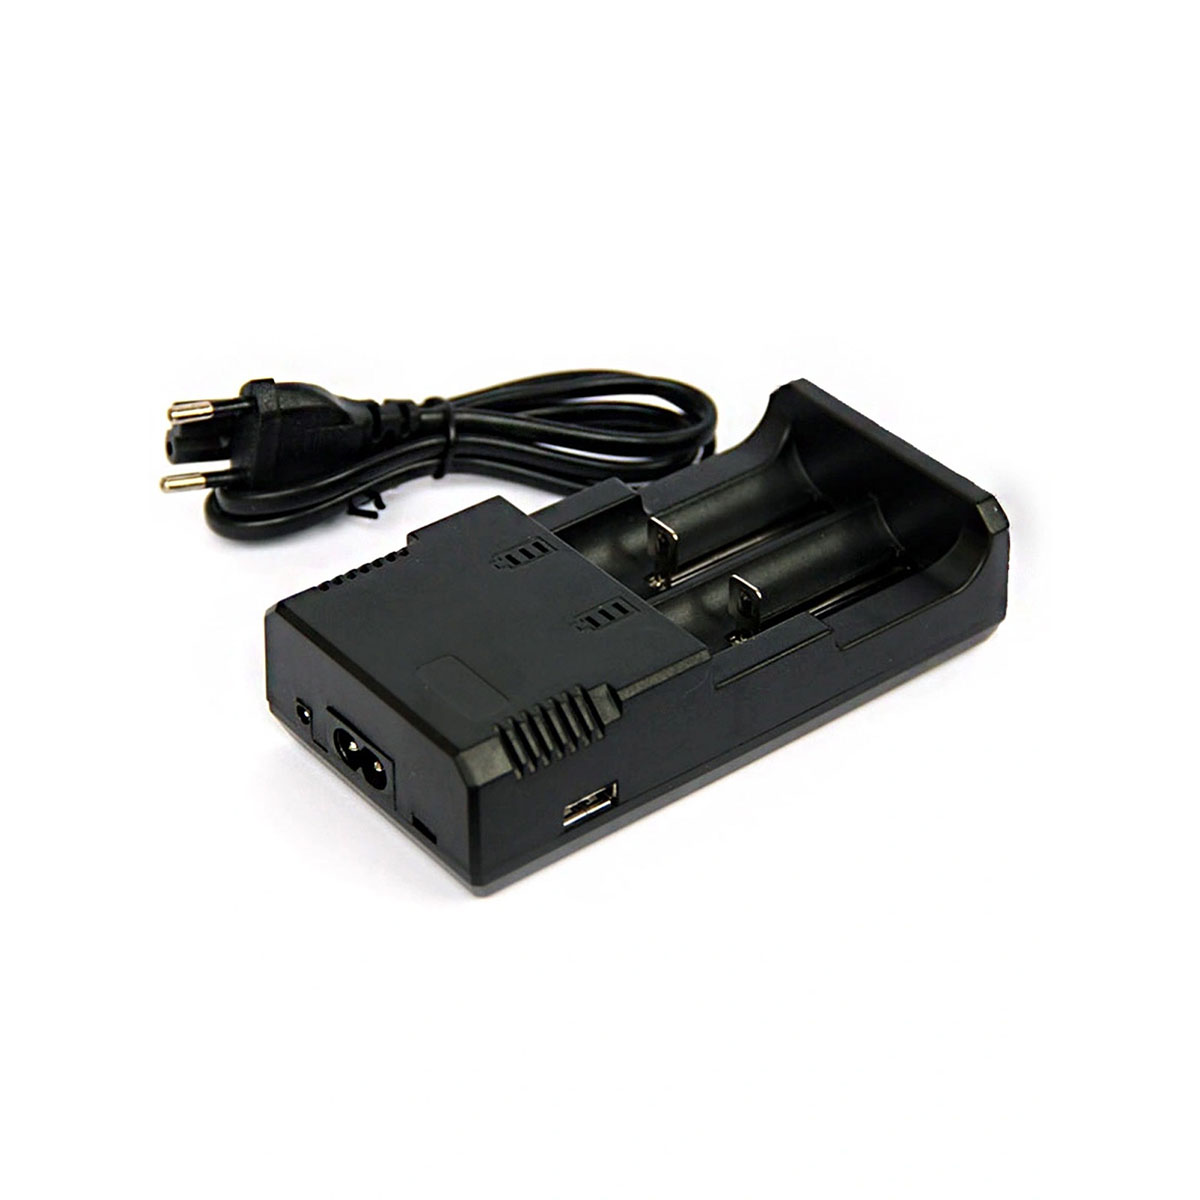 Зарядное устройство HONG DONG HD 8863 для аккумуляторов, цвет черный.